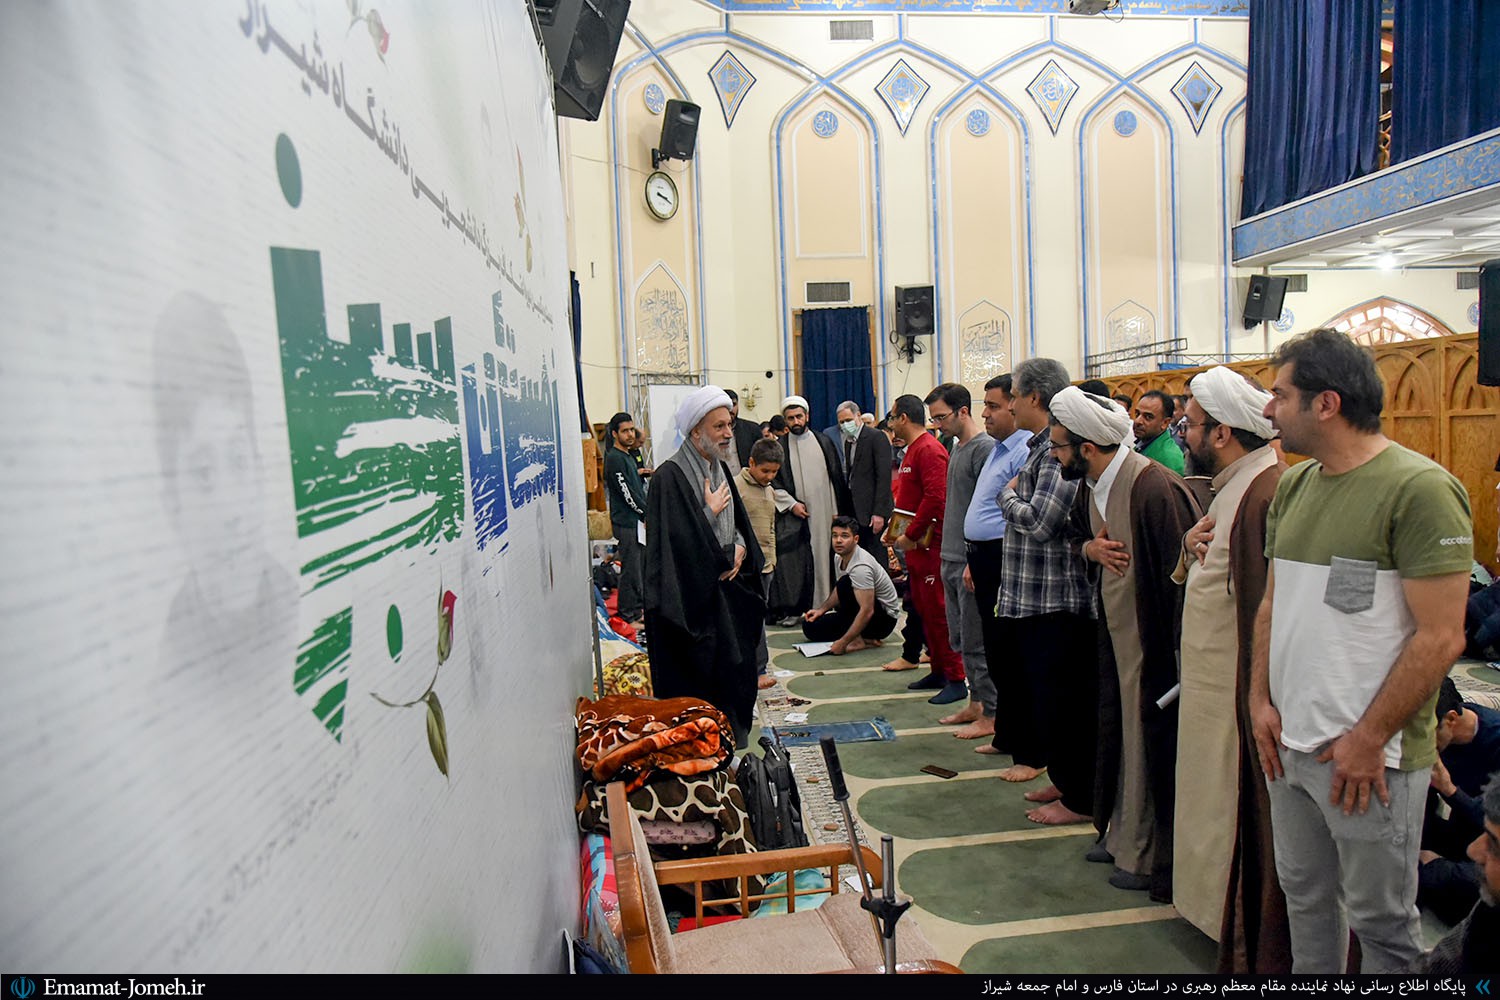 حضور آیت الله دژکام در جمع معتکفین مسجد دانشگاه شیراز